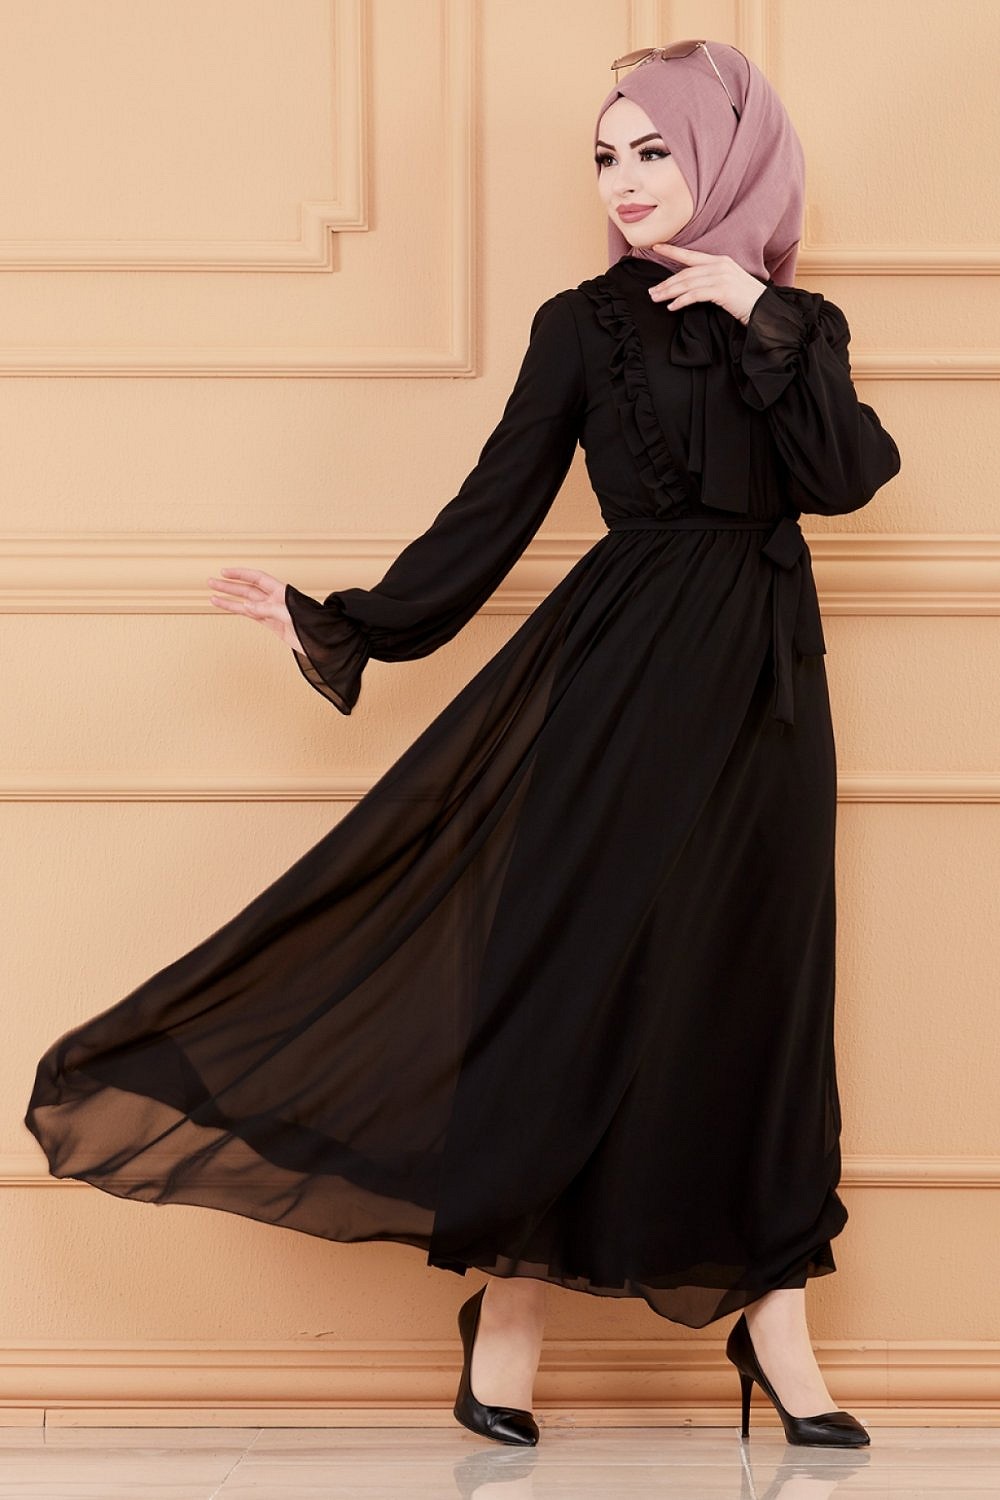 Robe de soirée pour femme (Tenue style chic pour hijab) - Couleur noir